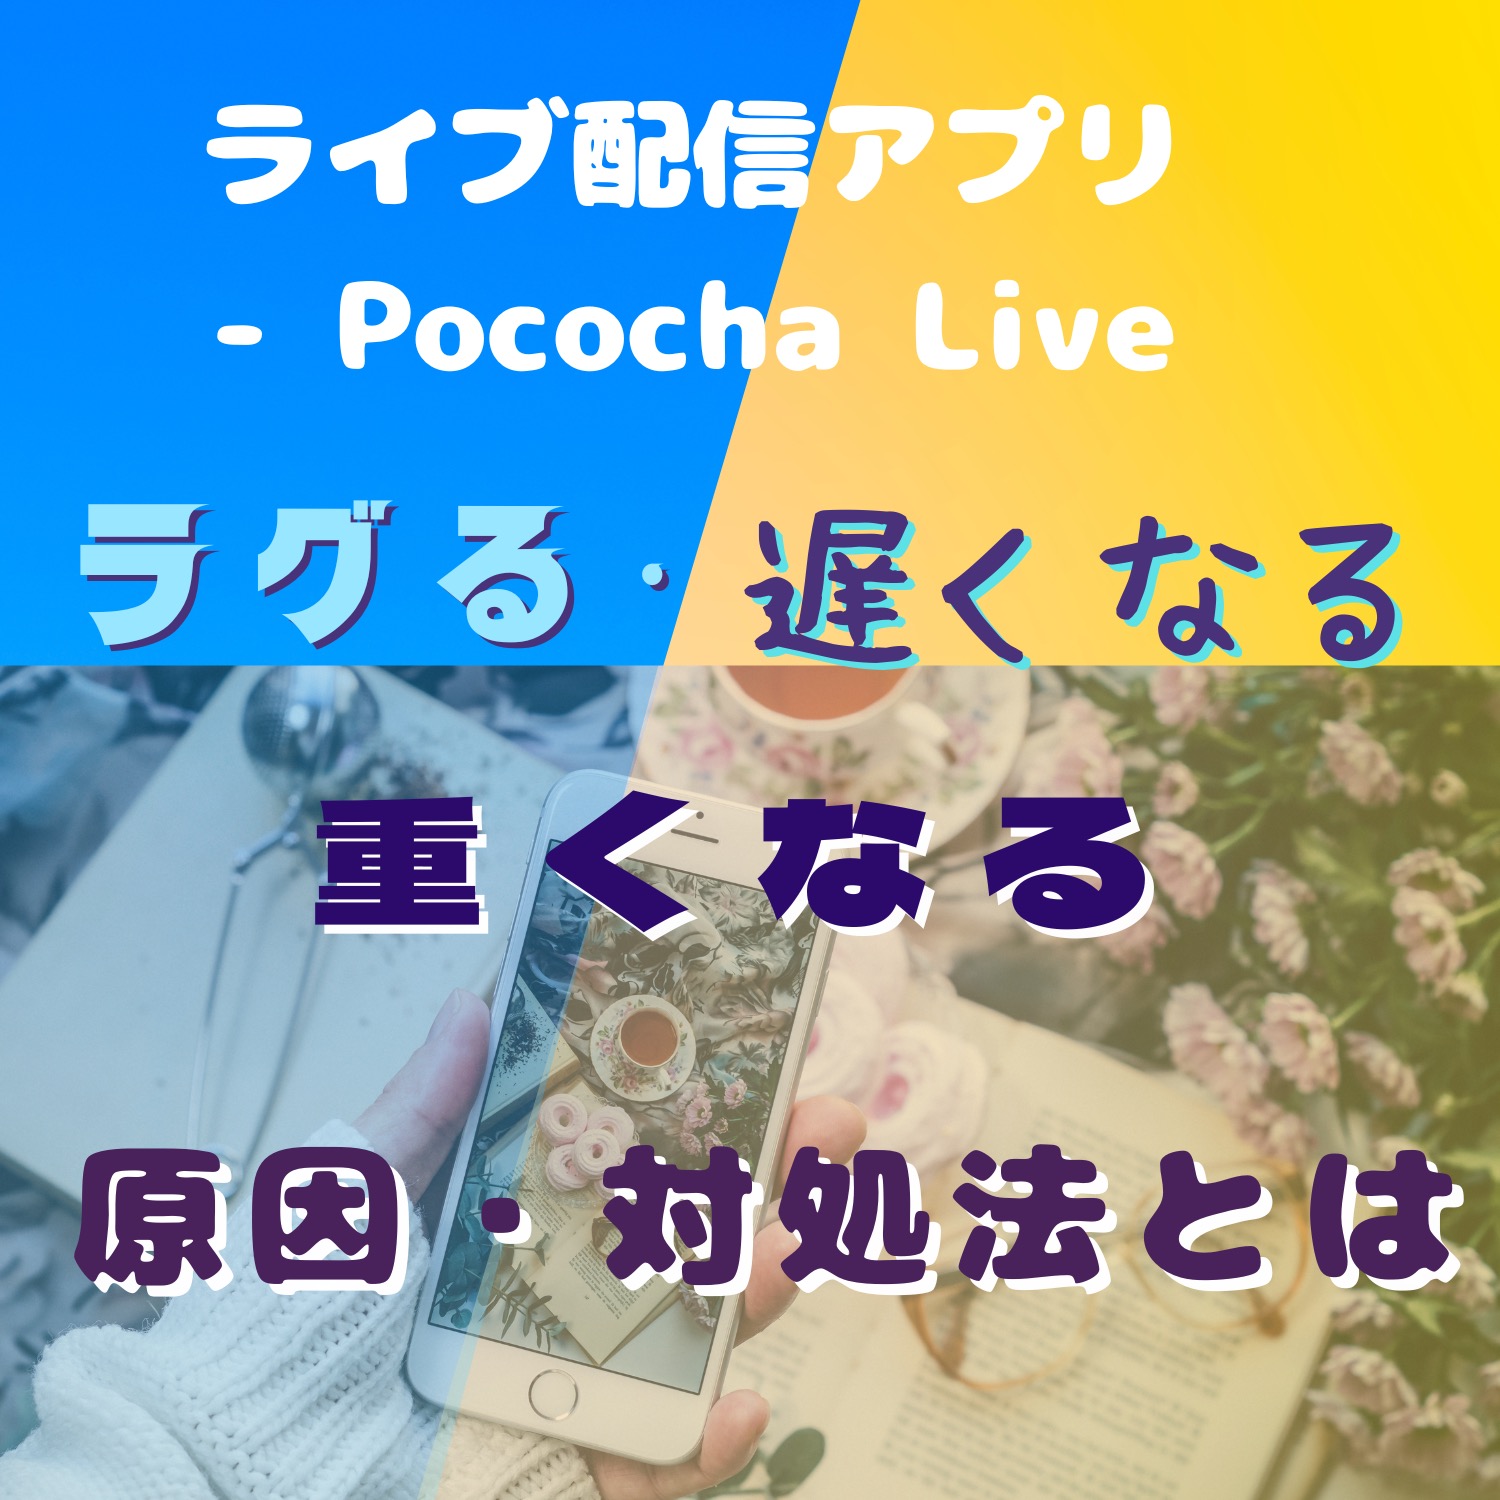 ライブ配信アプリ - Pococha Liveがラグる・遅くなる・重くなる原因と対処法とは #ライブ配信アプリ - Pococha Live